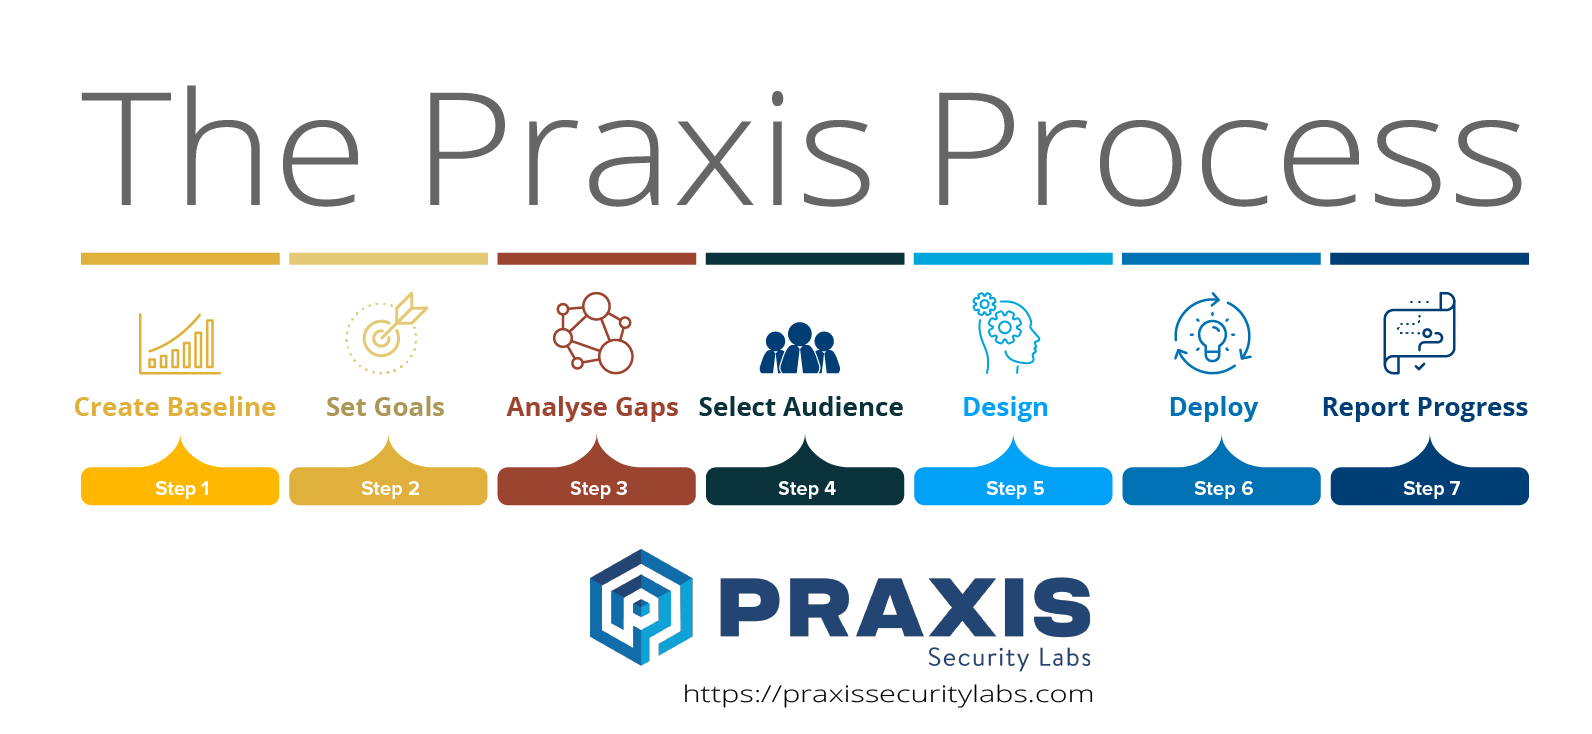 PraxisProcess_vertical_PraxisProcessOverview